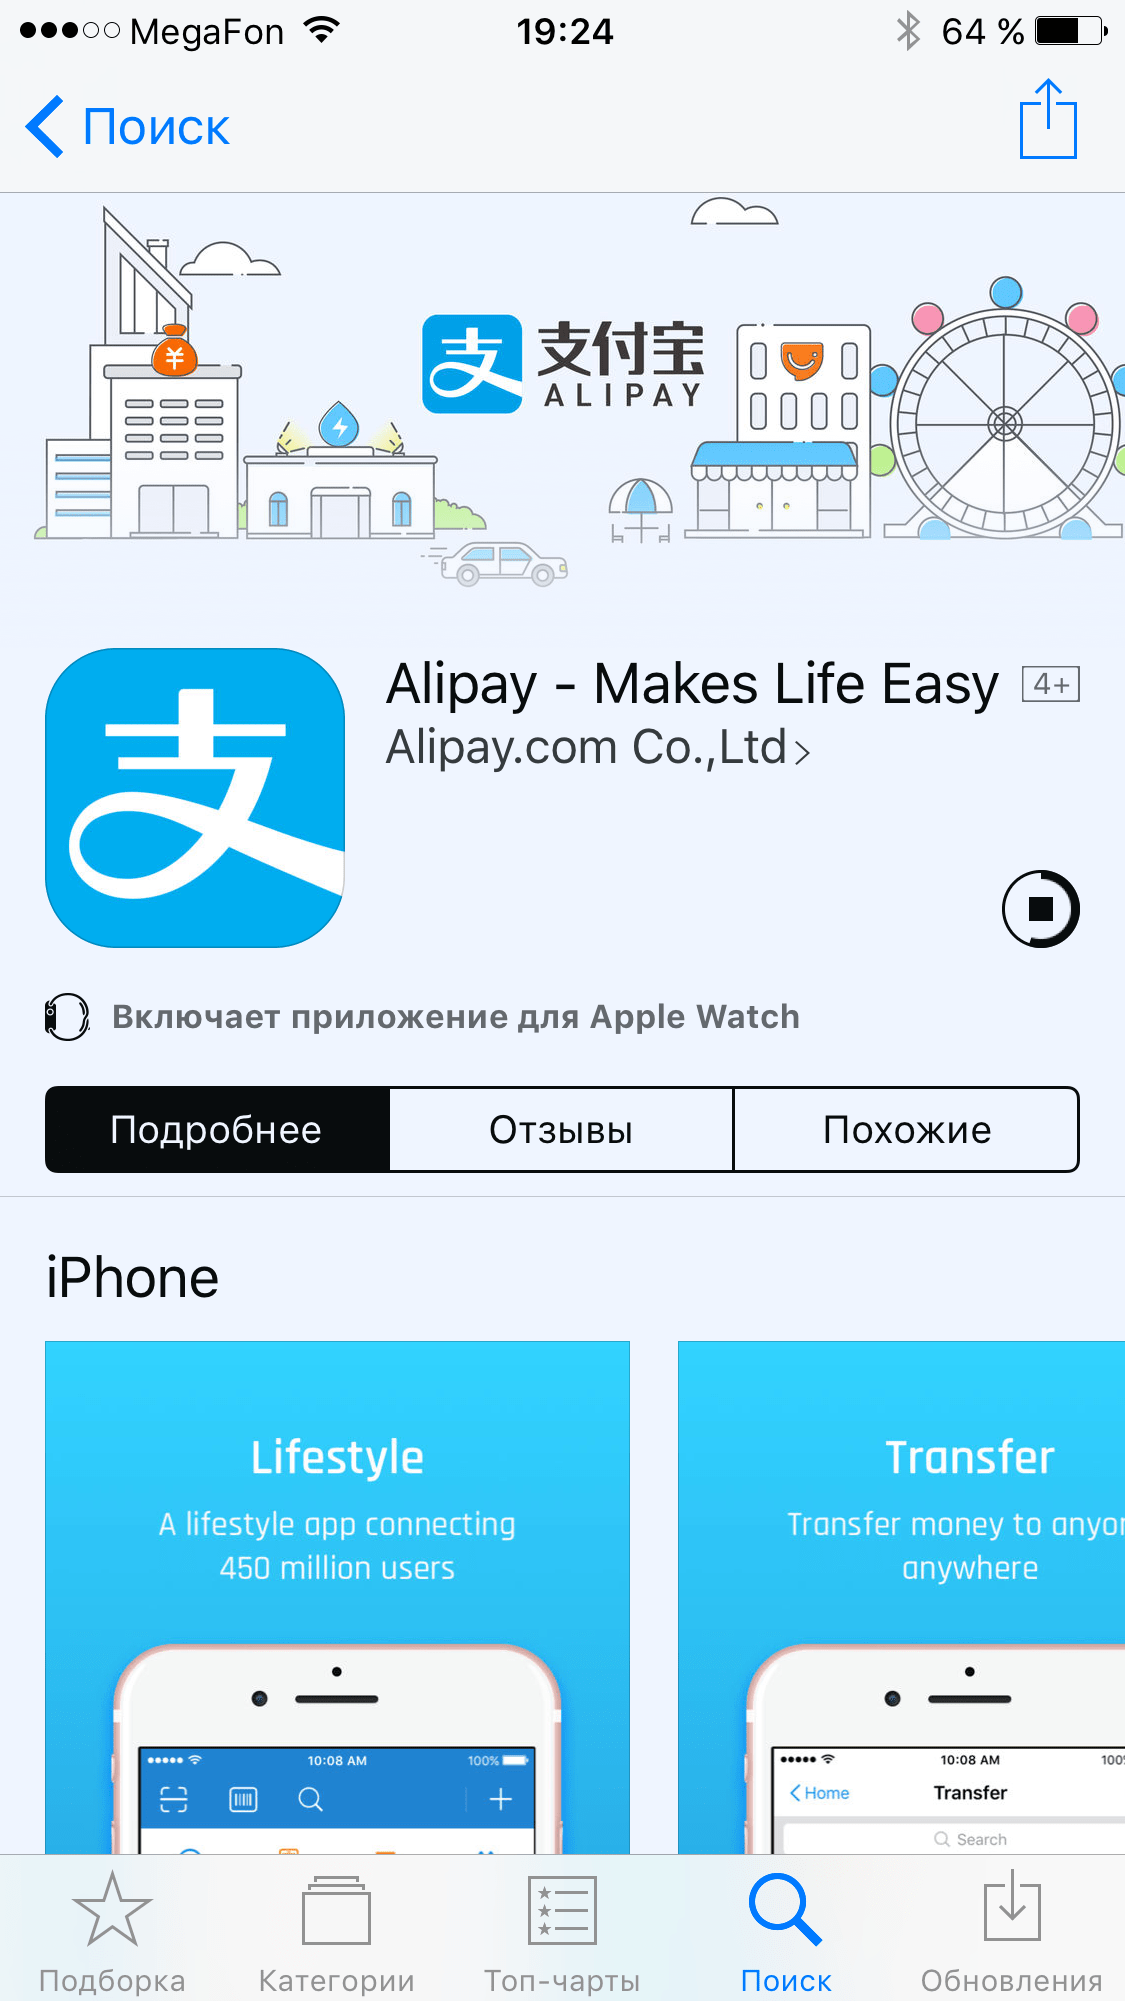 Alipay на русском - как открыть счет и начать пользоваться